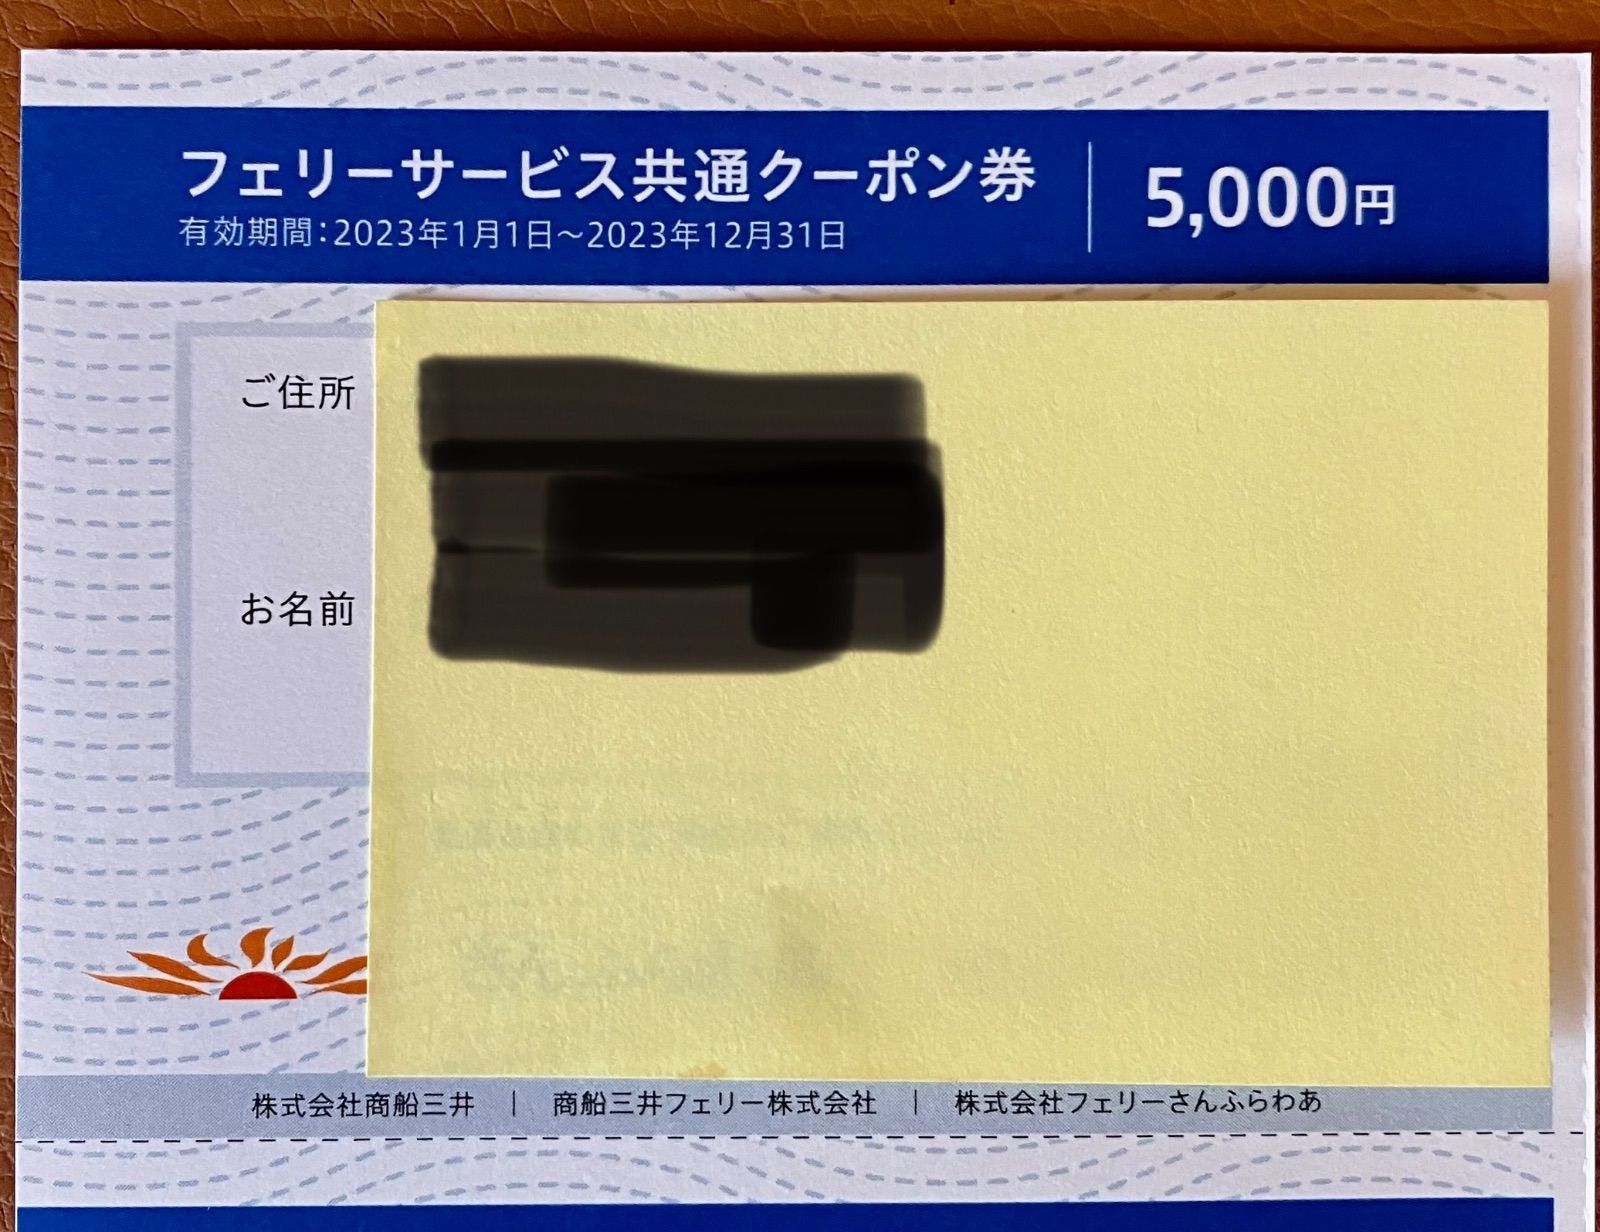 商船三井 さんふらわあ クーポン5000円 にっぽん丸 優待券2枚